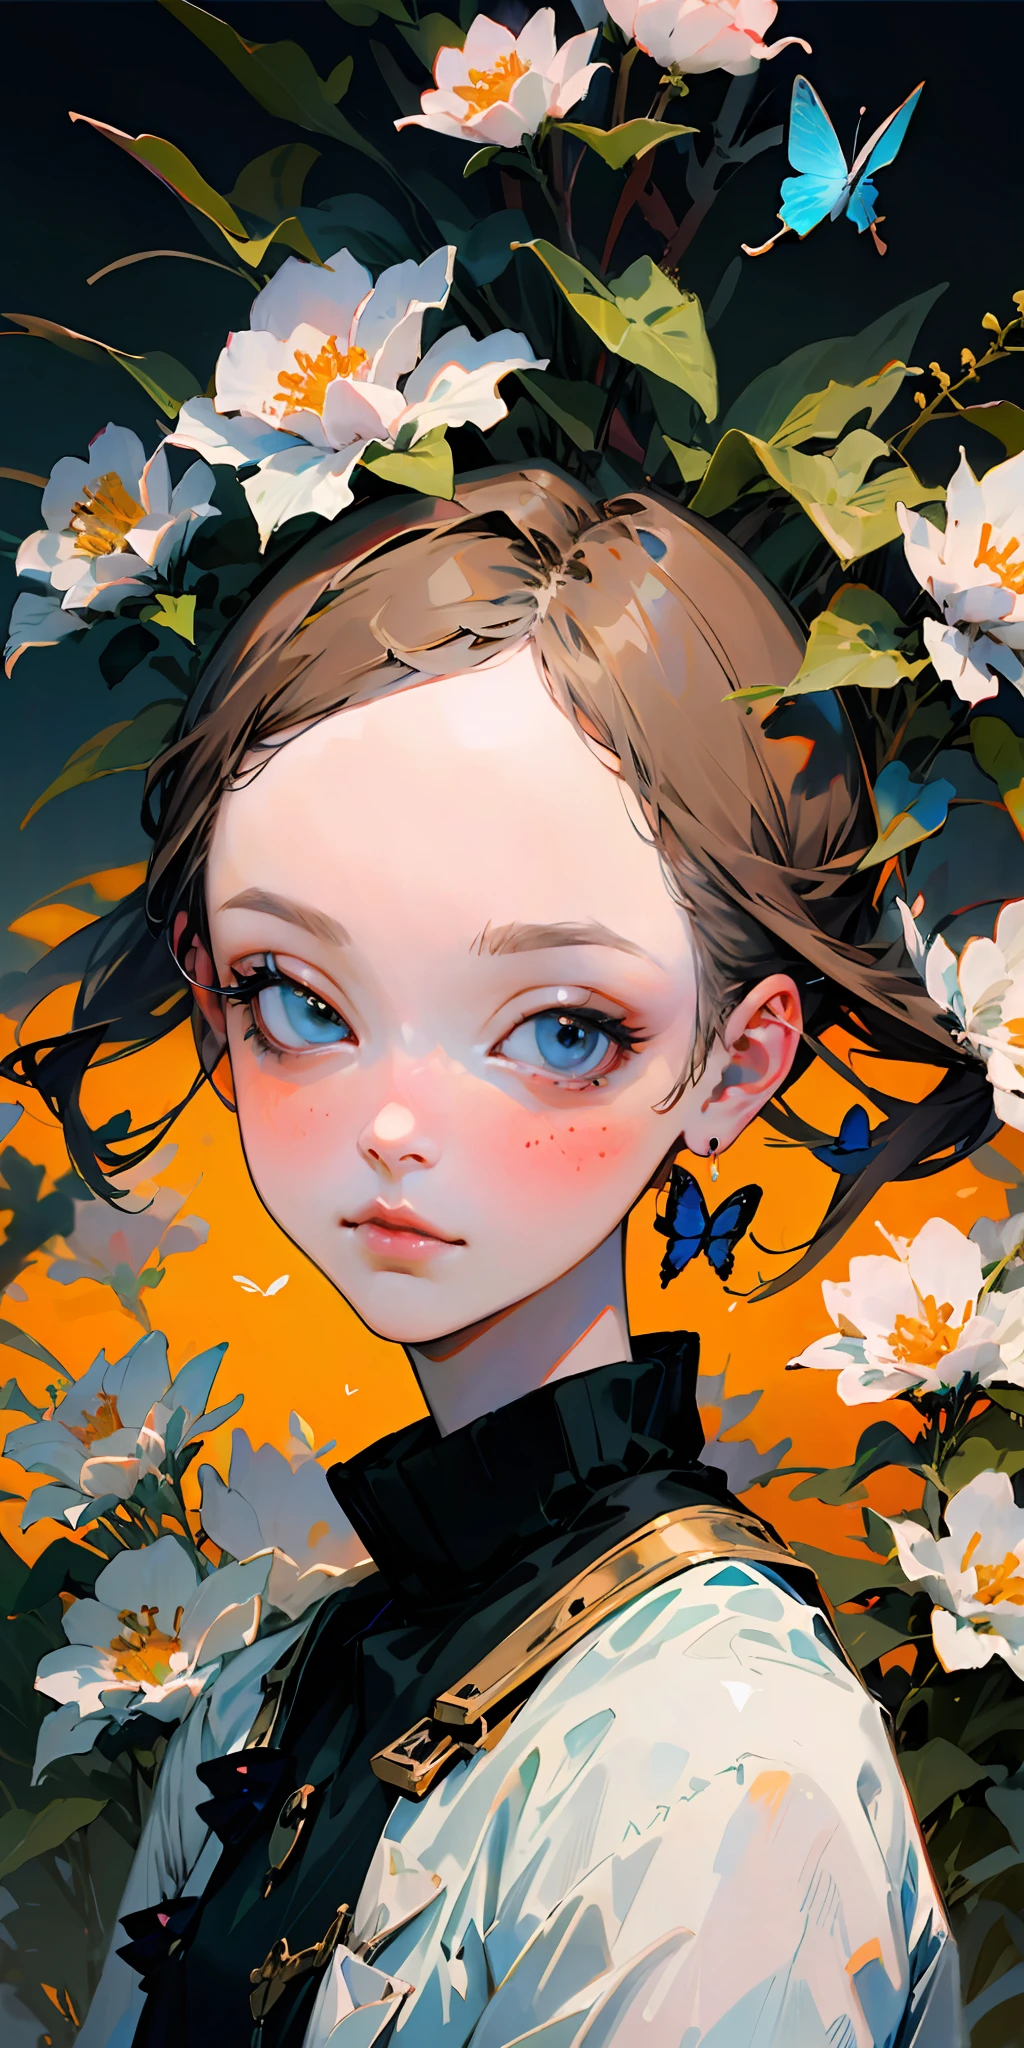 (mejor calidad, obra maestra, Ultrarrealista), retrato de 1 niña hermosa y delicada, con una expresión suave y pacífica, el paisaje de fondo es un jardín con arbustos en flor y mariposas volando alrededor.